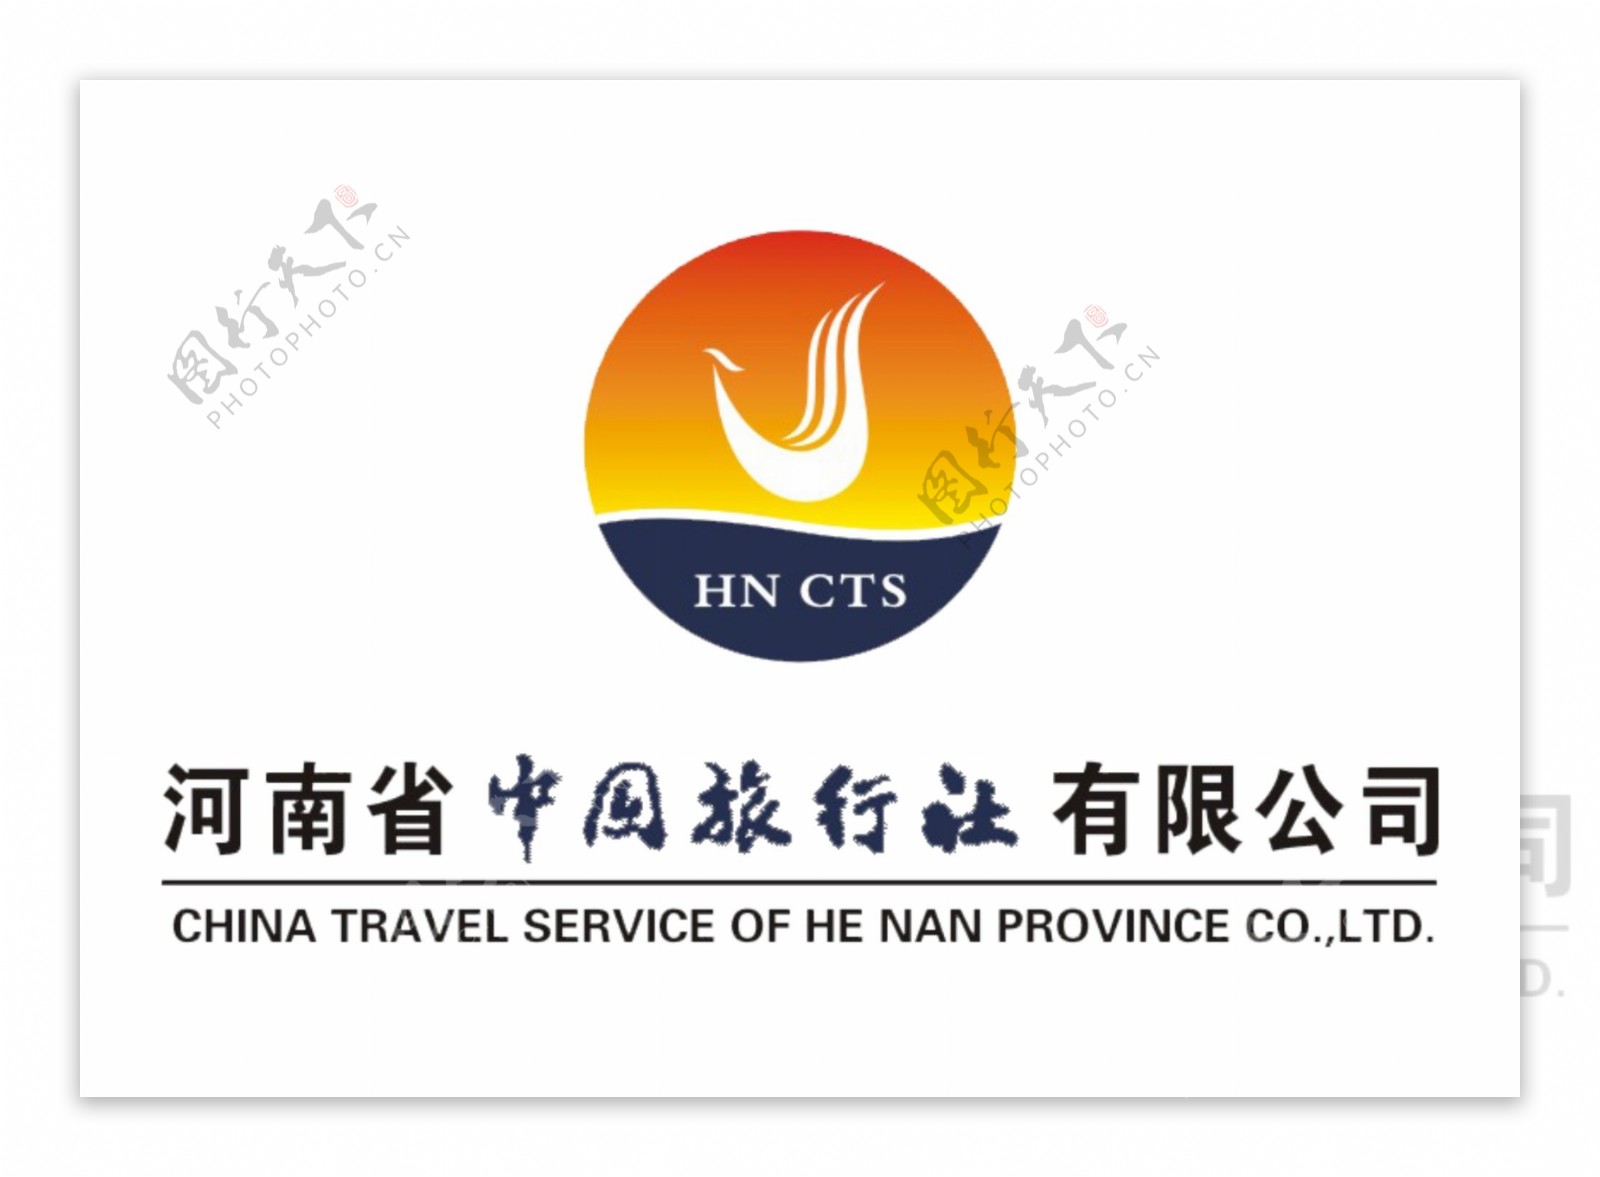 中国旅行社标志